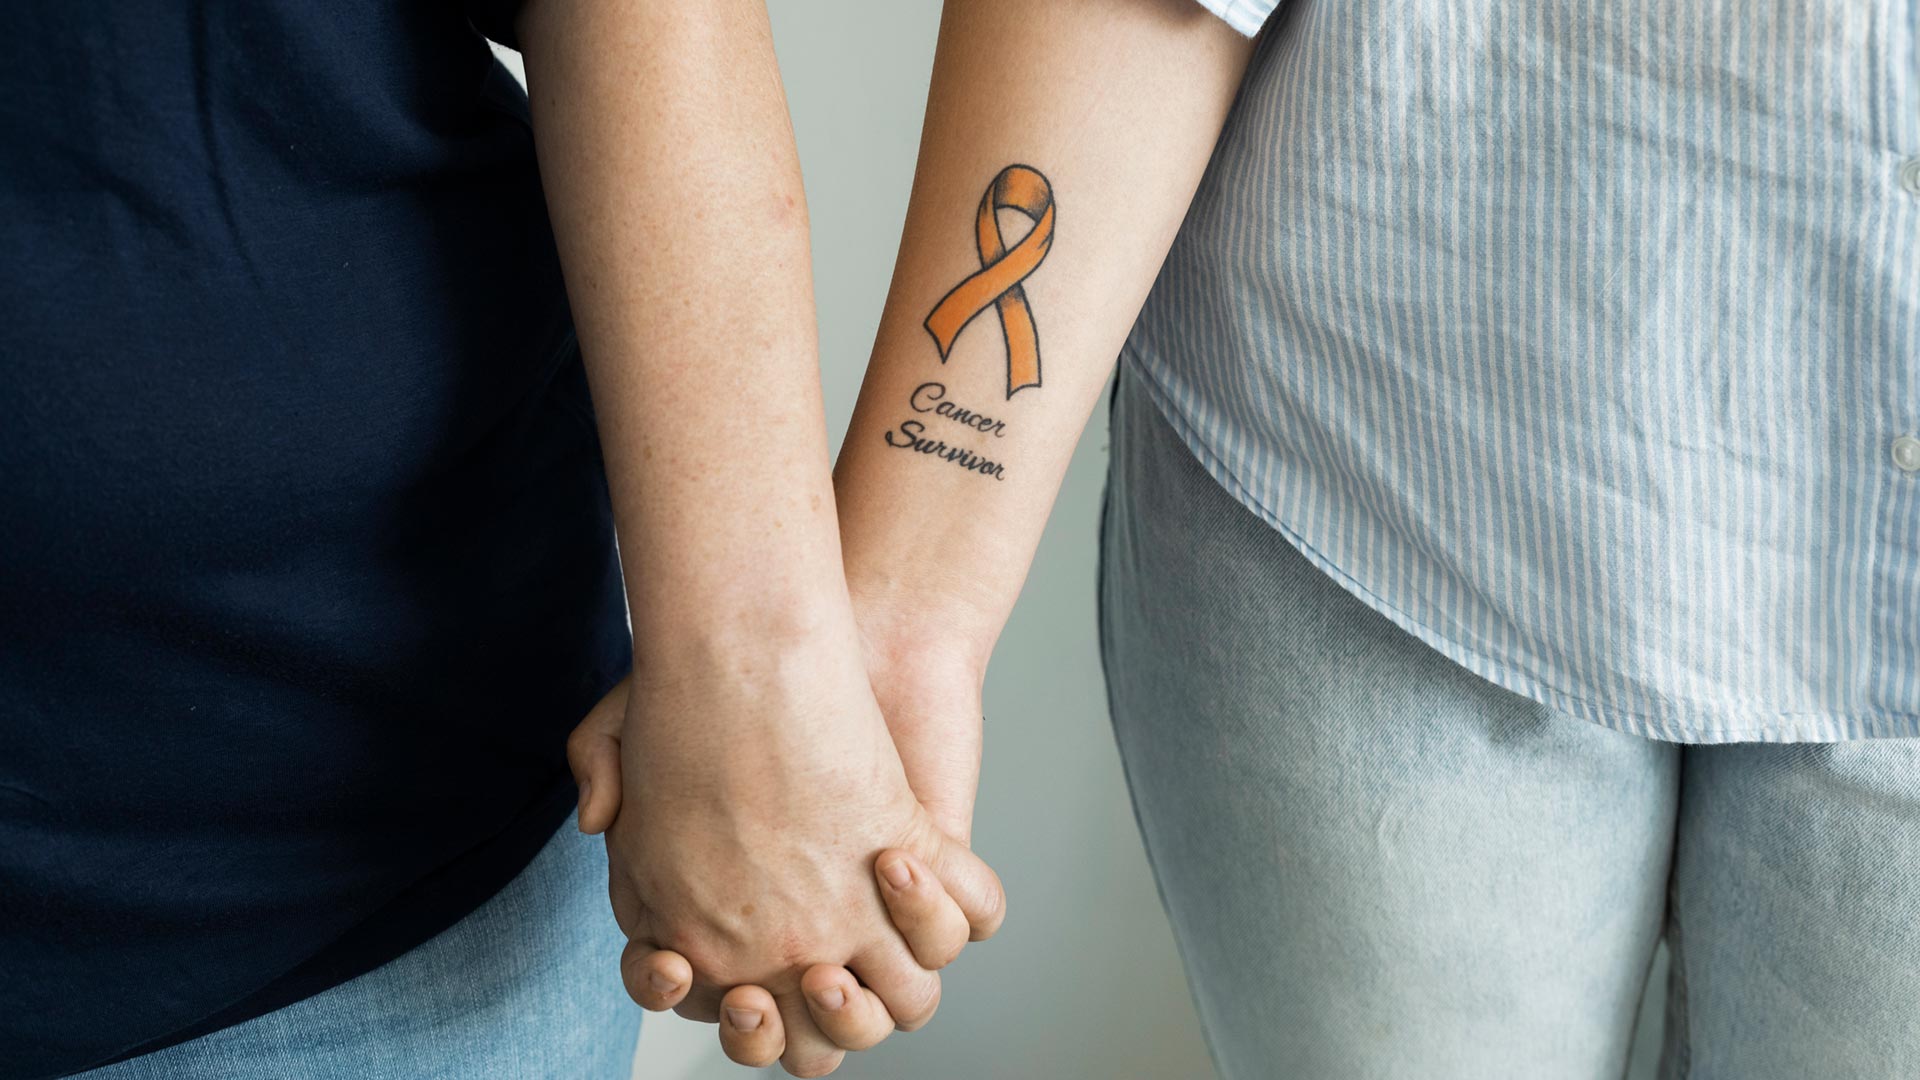 Lähikuva henkilöistä jotka pitävät toisiaan käsistä. Toisen käsivarteen on tatuoitu teksti Cancer Survivor.